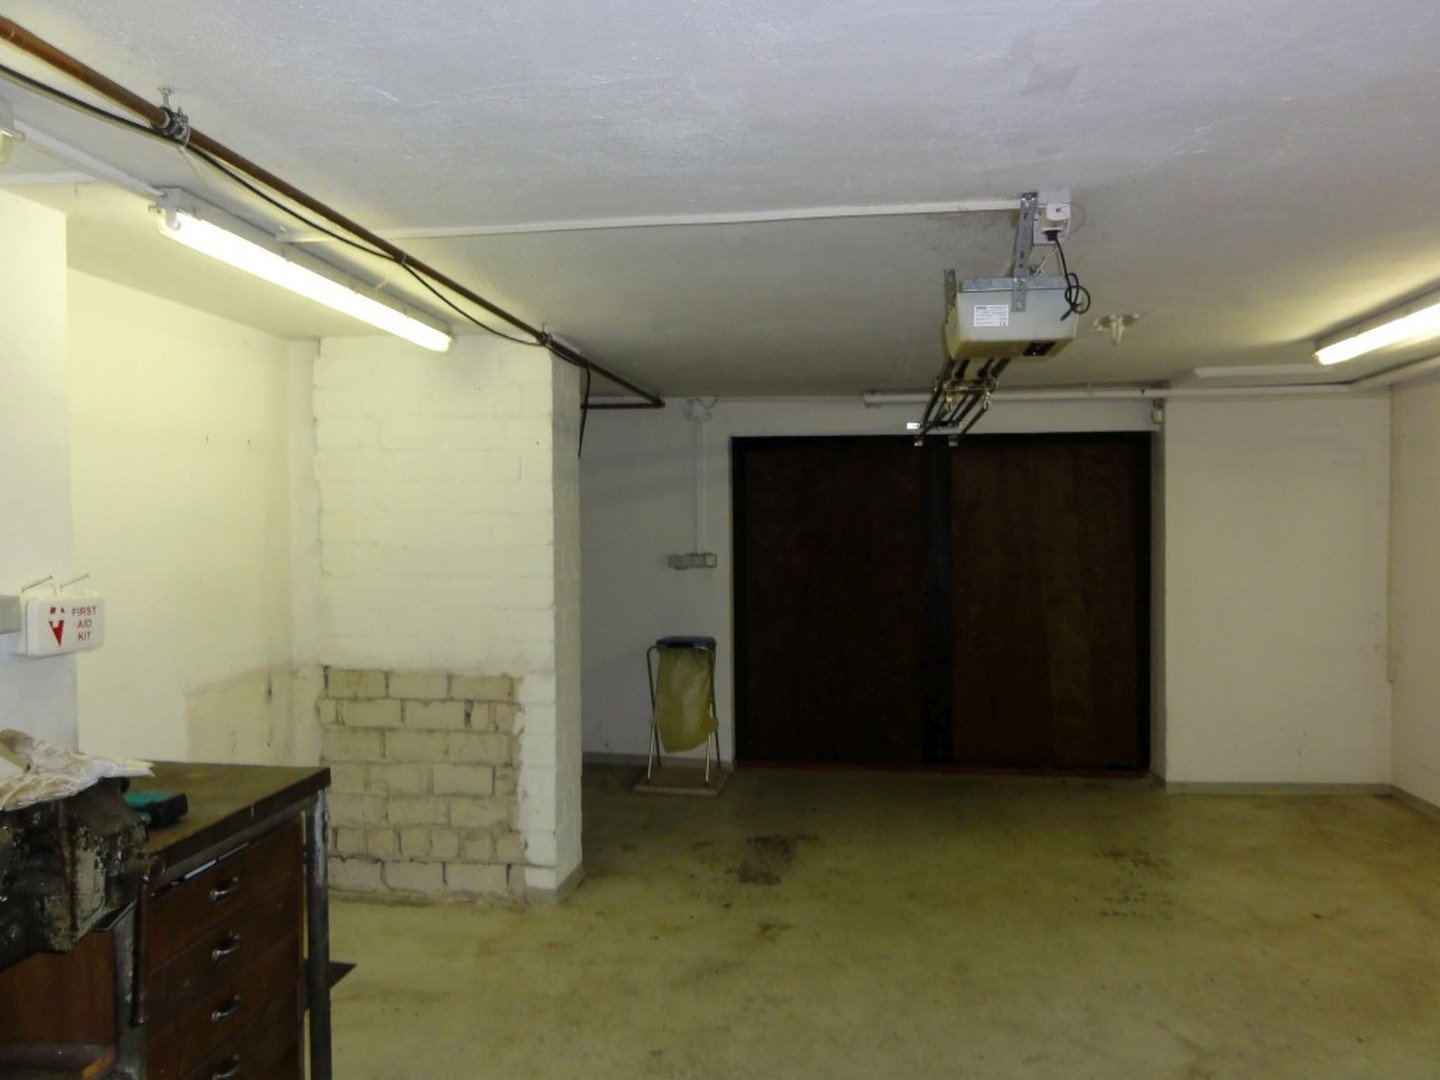 Garage im Keller